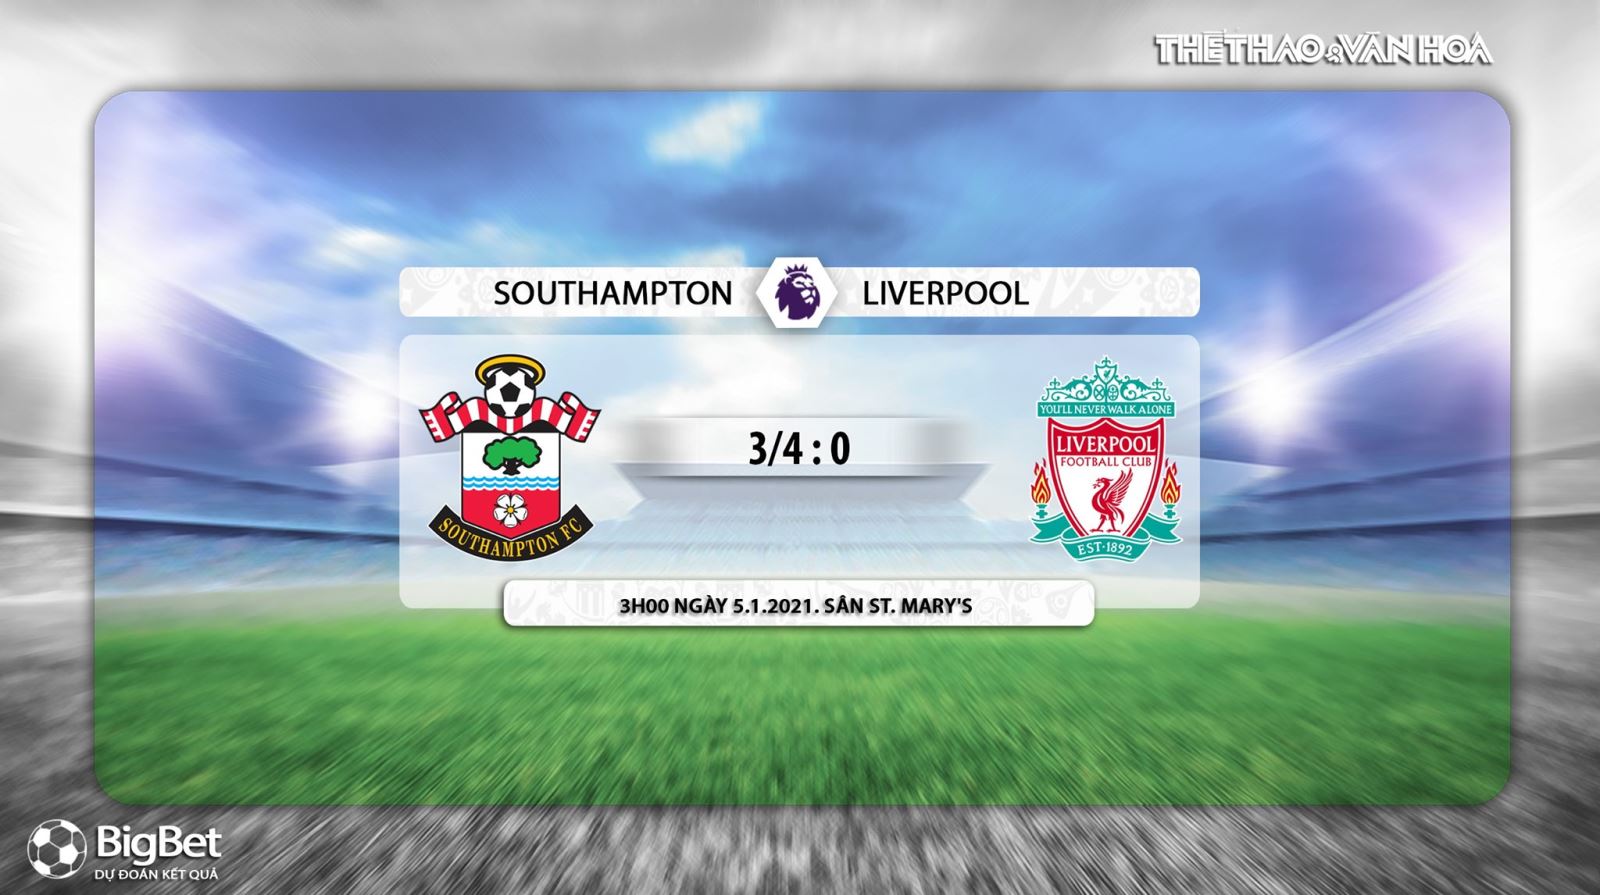 Keo nha cai, Nhận định kết quả, Liverpool, Southamton vs Liverpool, K+, K+PM Trực tiếp bóng đá Anh hôm nay, trực tiếp Liverpool đấu với Southampton, kèo bóng đá Liverpool